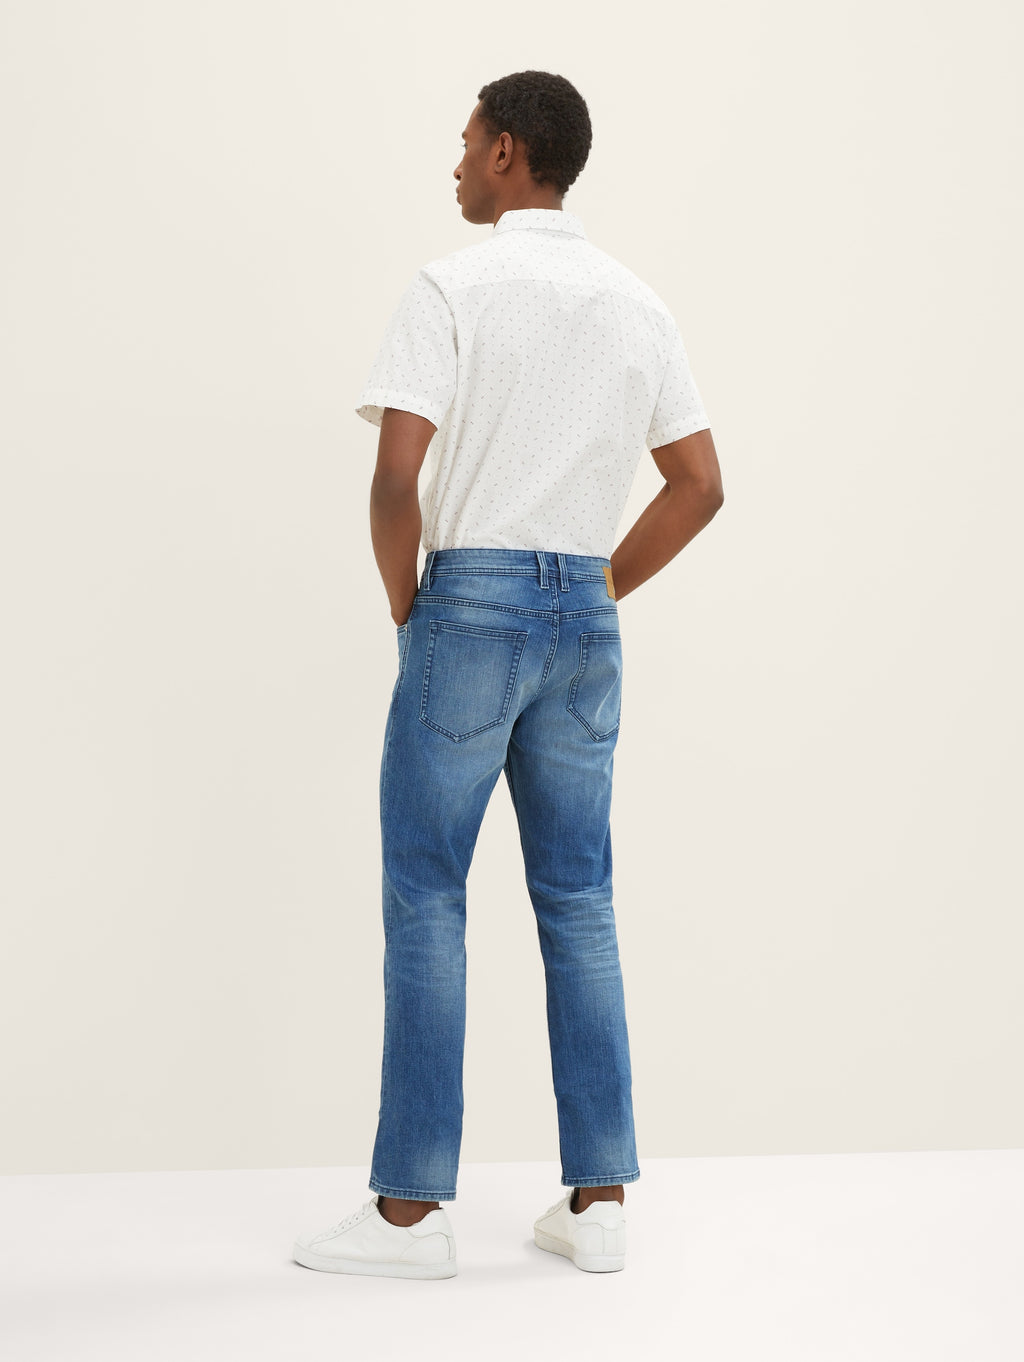 Stone Tailor Denim slim regular Tom | Blue Mid jeans Josh handsandhead Used Coolmax